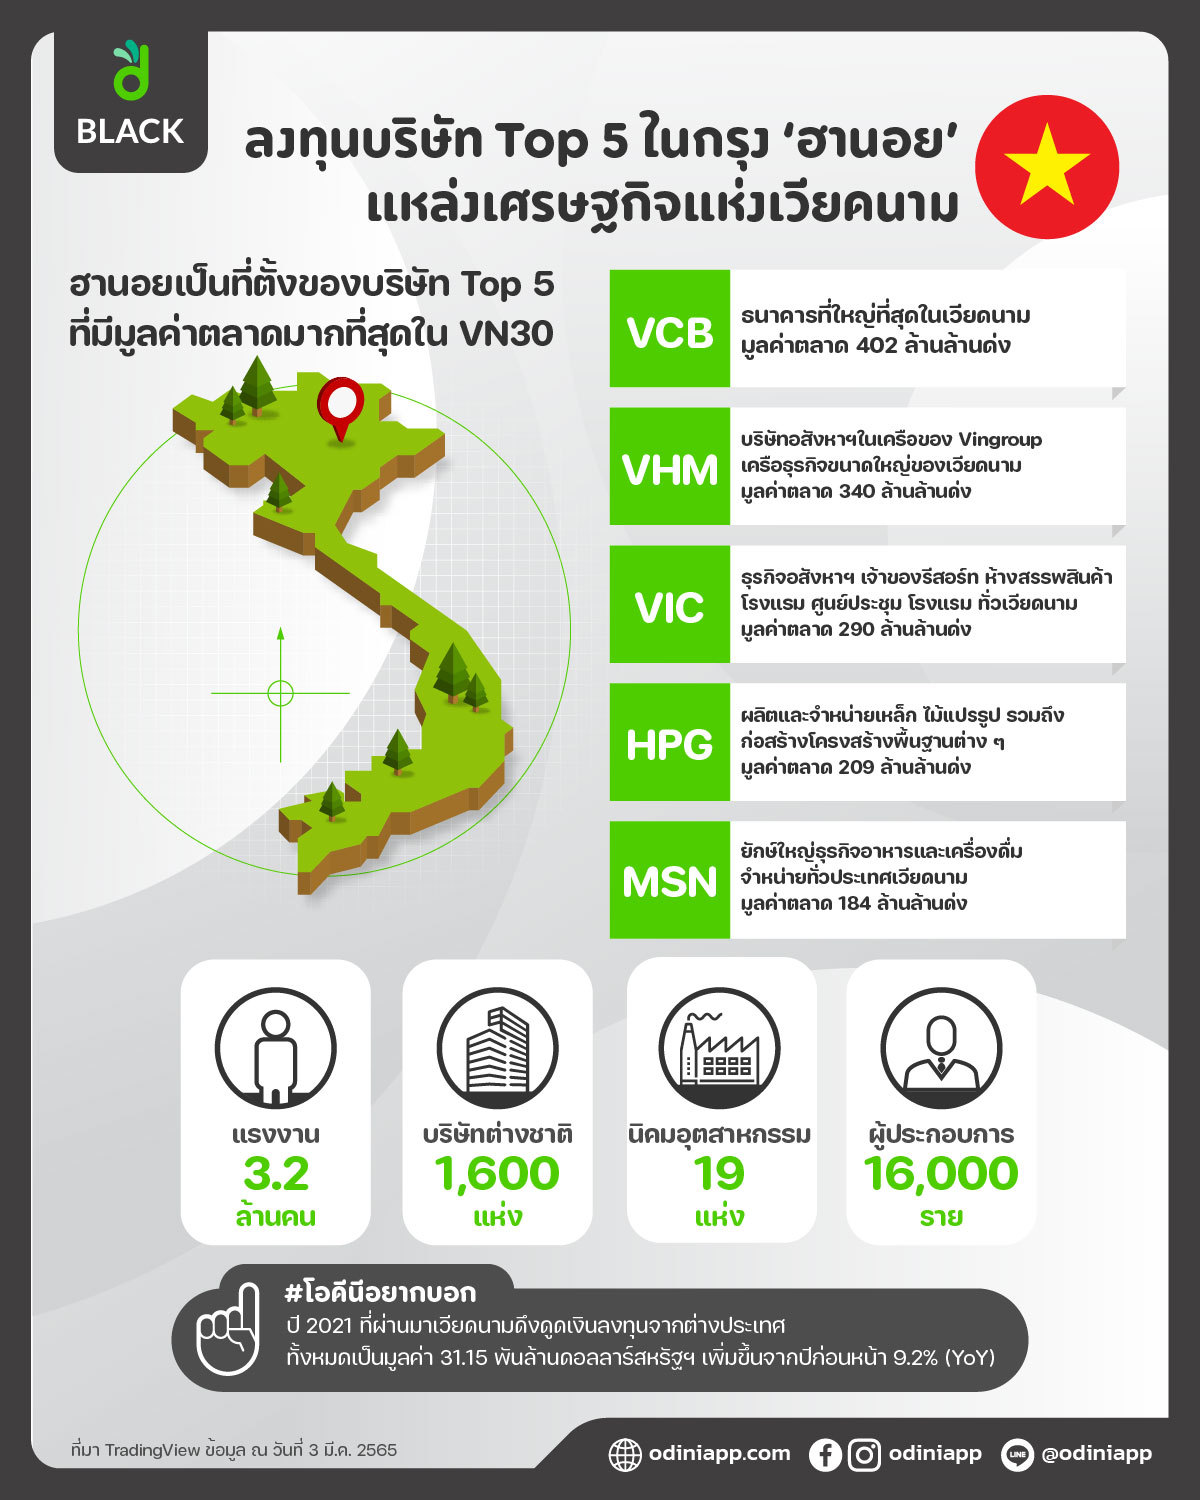 ลงทุนบริษัท Top 5 ในกรุง 'ฮานอย' แหล่งเศรษฐกิจแห่งเวียดนาม – Odini ลงทุนกองทุนอัตโนมัติด้วย  Robo-Advisor แอปแรกในไทย